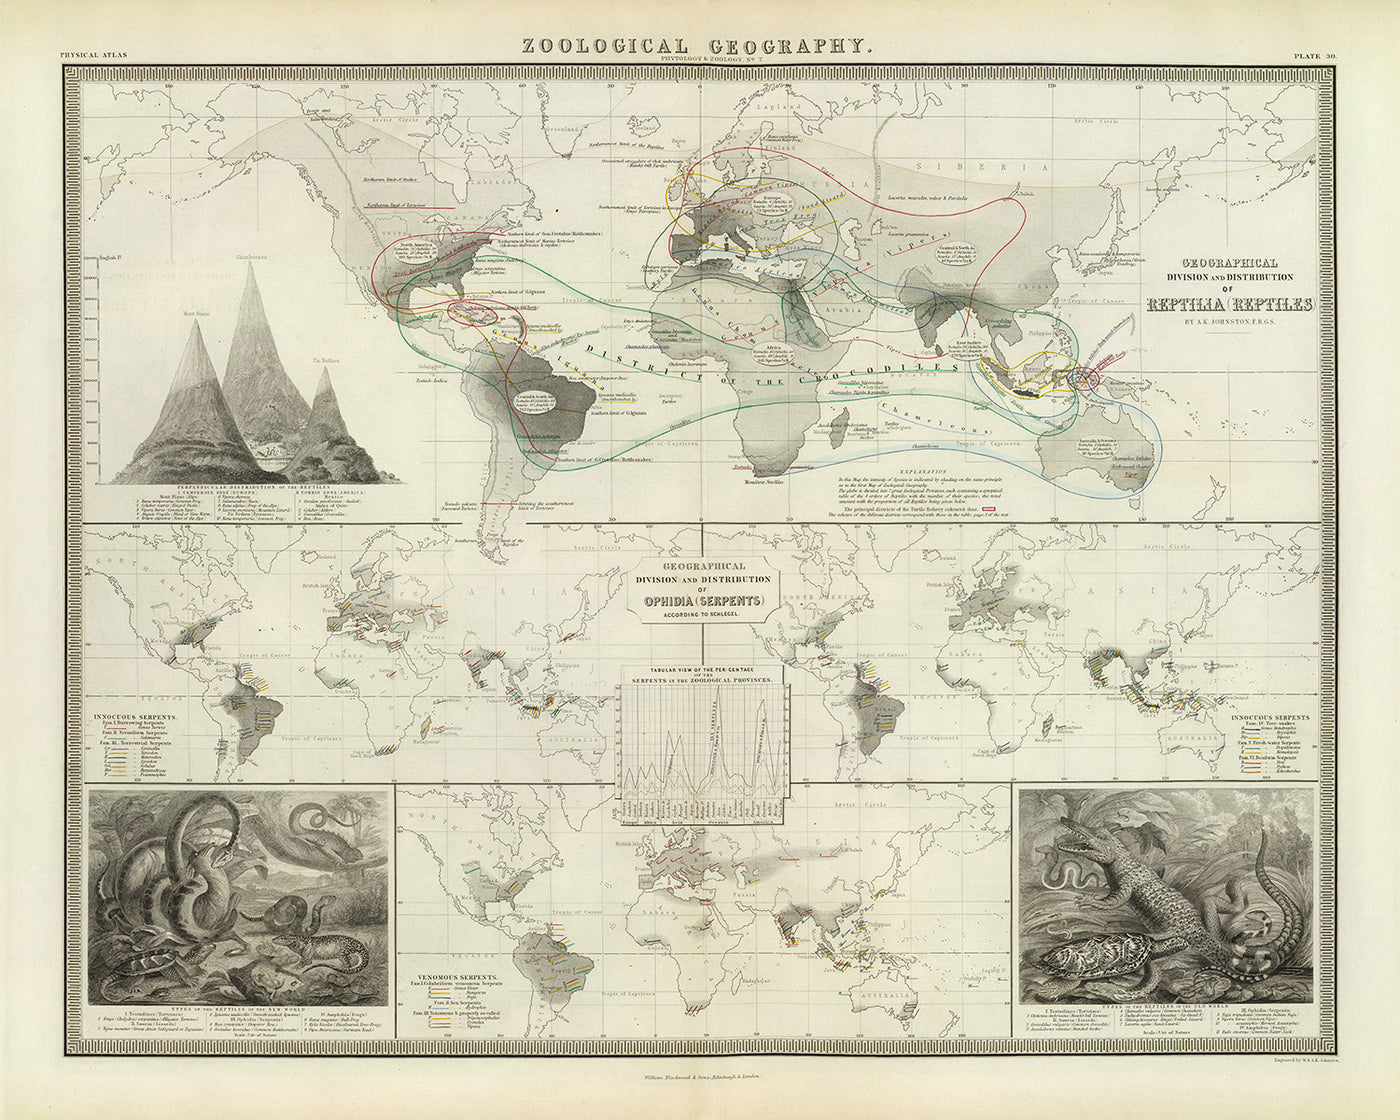 Mapa del Viejo Mundo de distribución de reptiles por Johnston, 1856: serpientes, lagartos y otras ilustraciones de reptiles